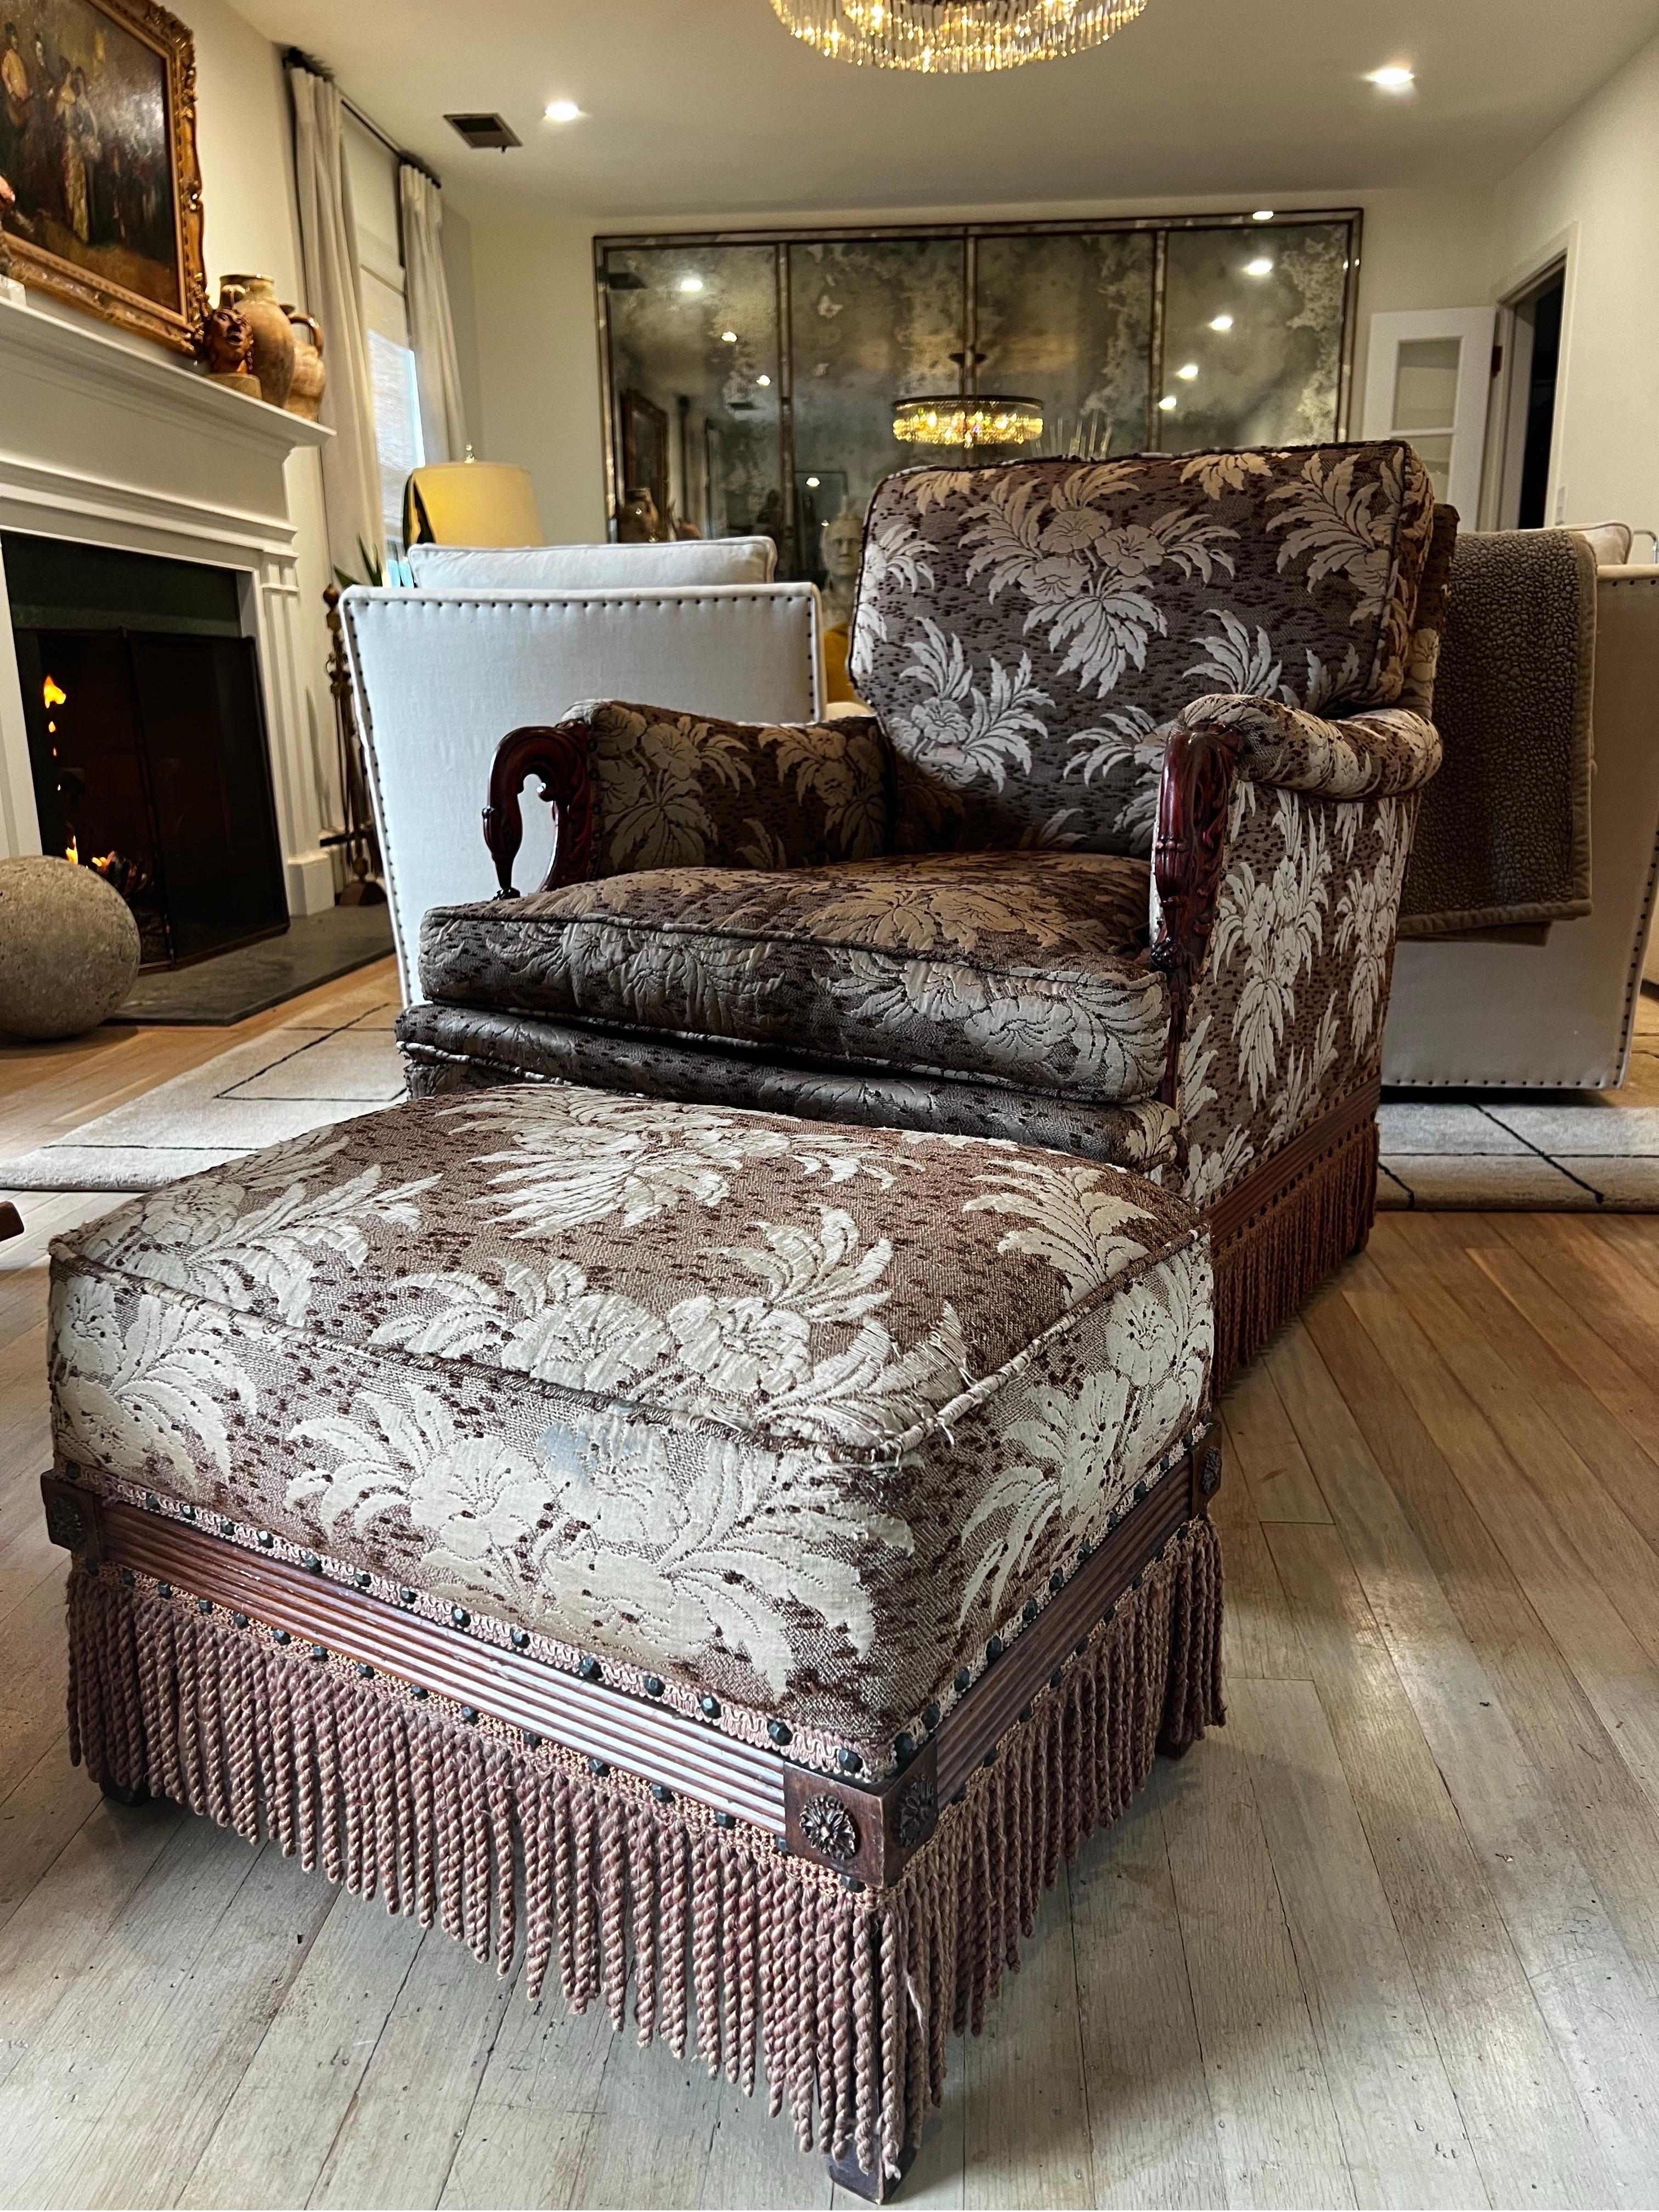 Impressionnant fauteuil victorien sur mesure avec ottoman.  Construit pour le confort et fabriqué en acajou avec des accoudoirs sculptés et des garnitures le long de la base.  Tapissé en Pennsylvanie d'un tissu floral japonais esq au ton vert crème